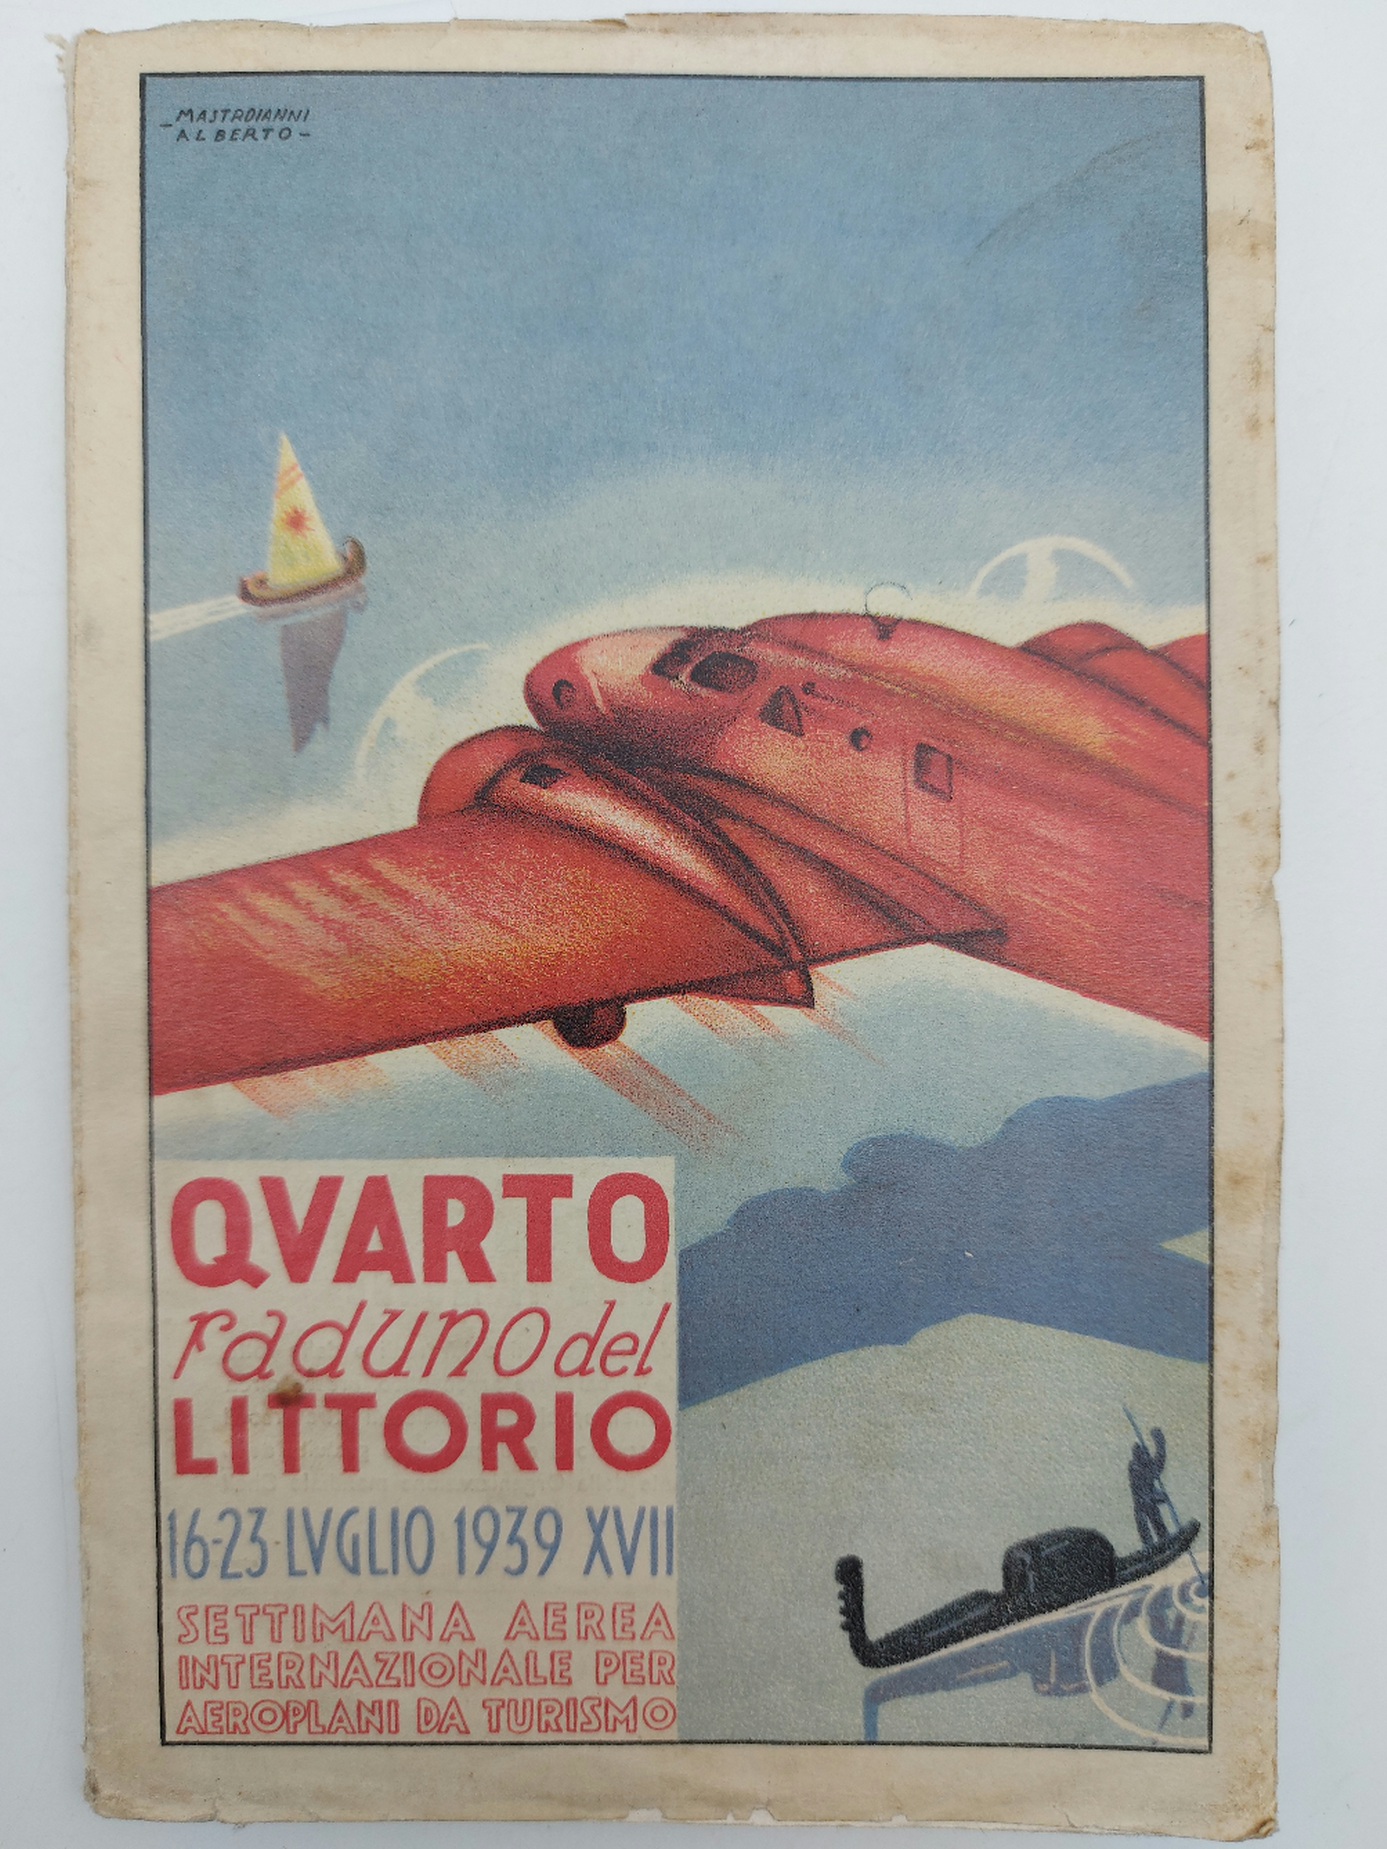 IV raduno del Littorio. 16 - 23 luglio 1939 XVII. Settimana aerea internazionale per aeroplani da turismo